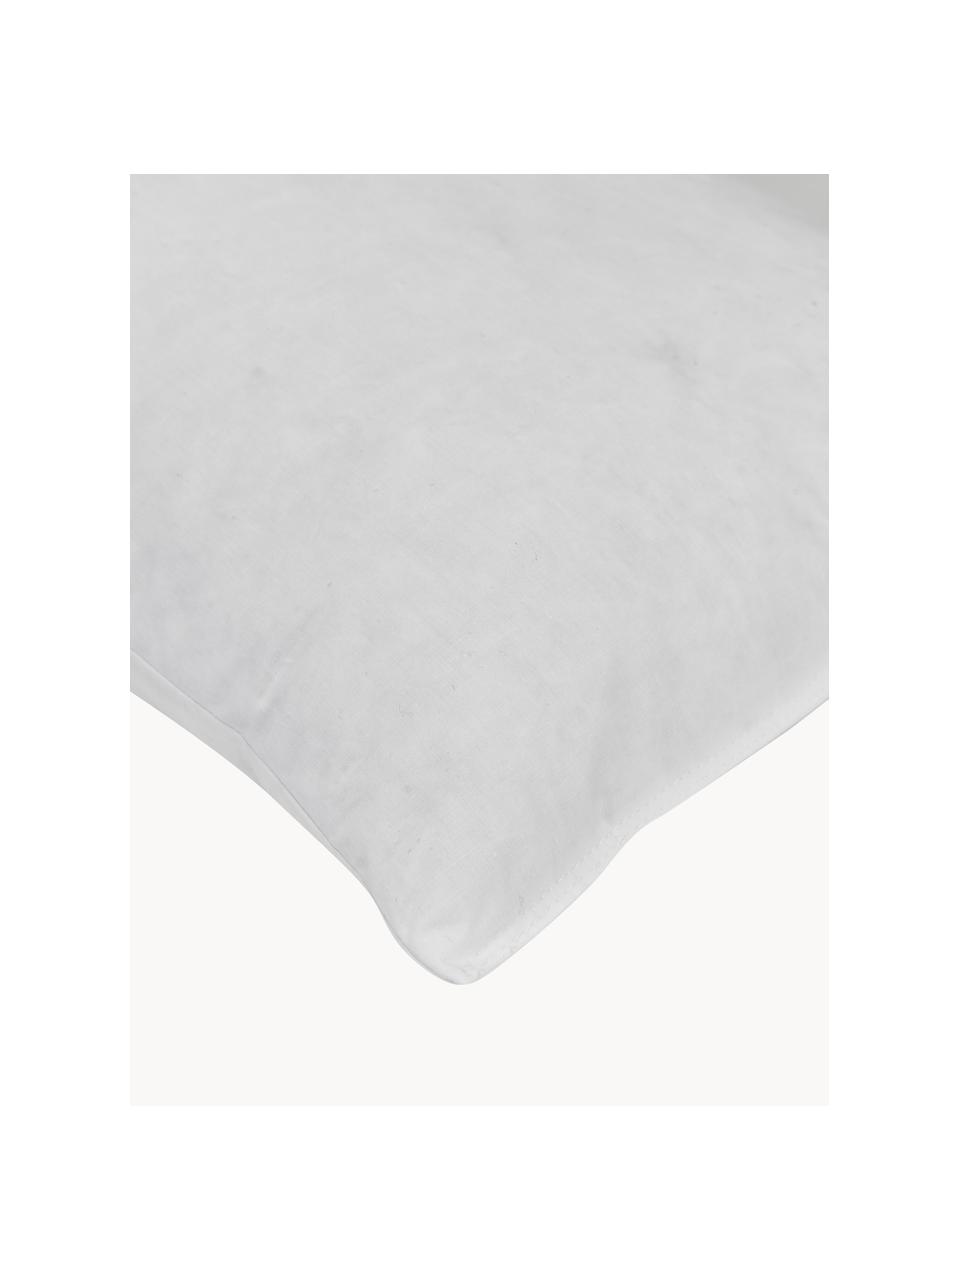 Dekokissen-Inlett Comfort, Feder-Füllung, verschiedene Größen, Bezug: Feinköper, 100 % Baumwoll, Weiß, B 30 x L 50 cm